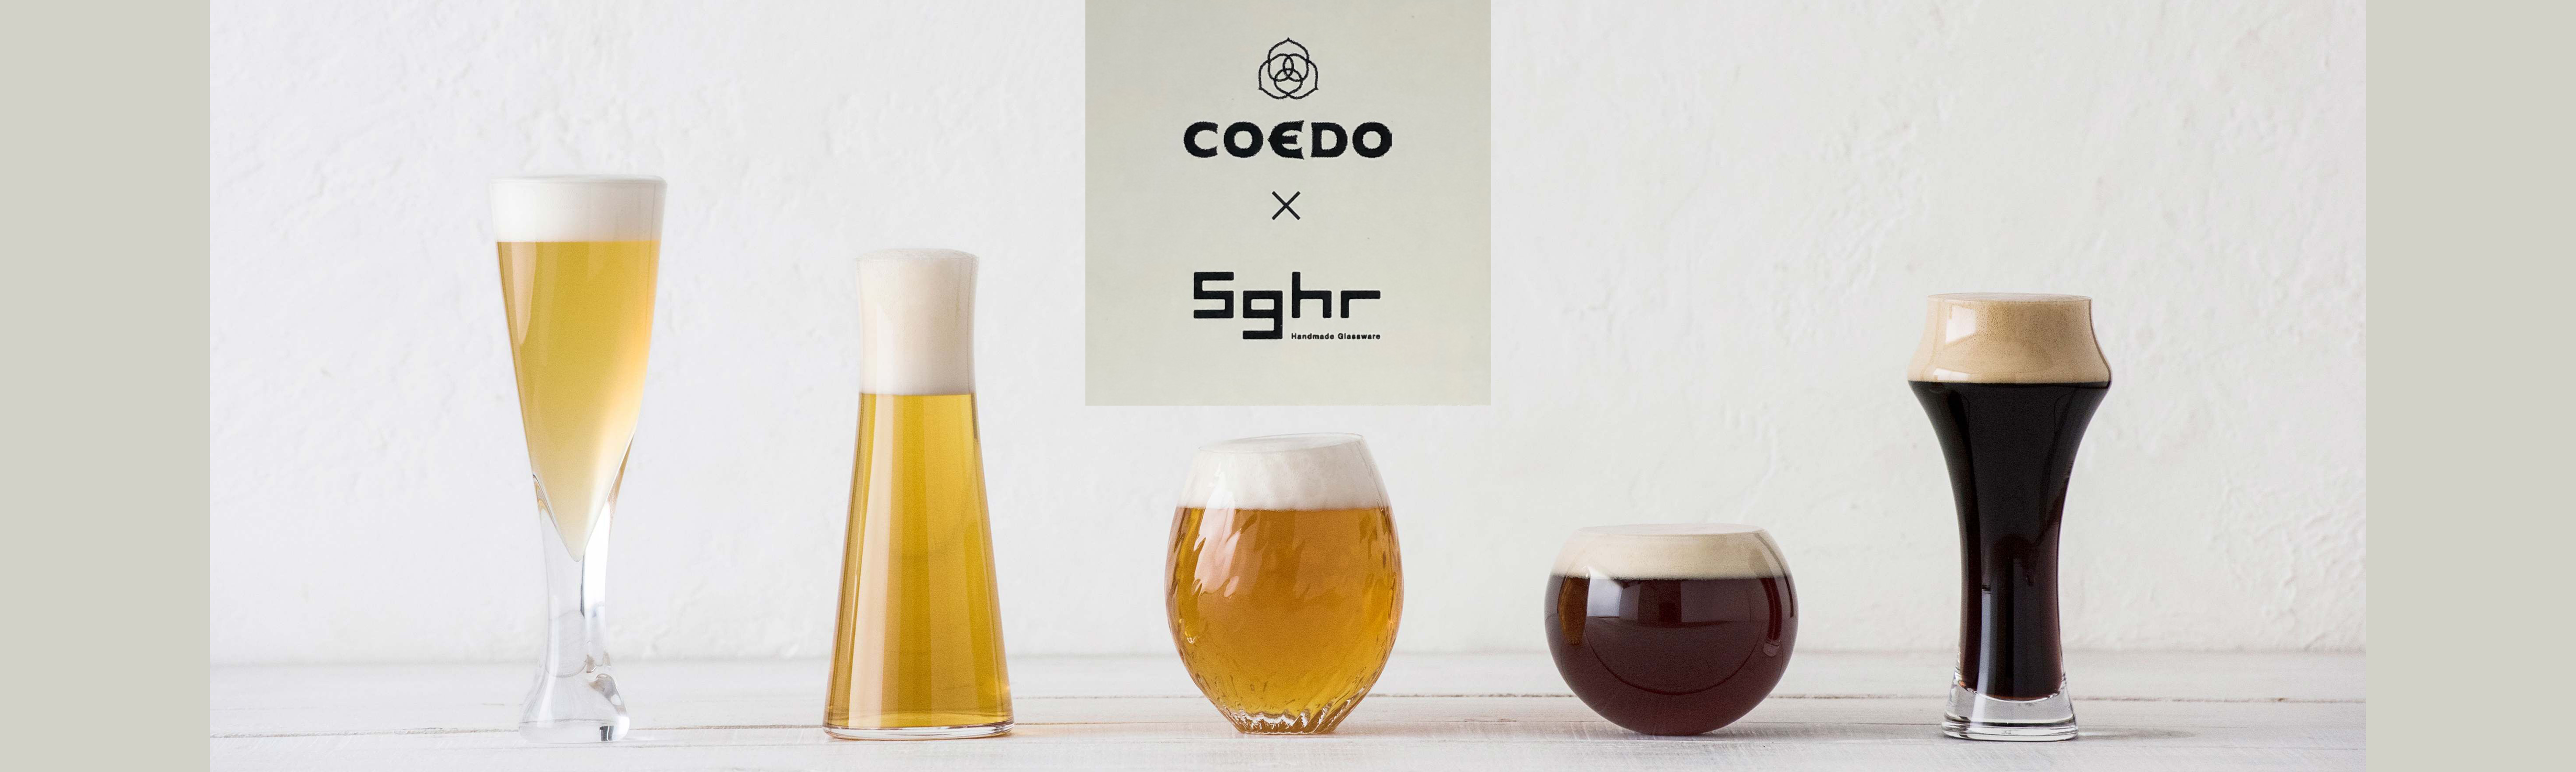 COEDO-x-Sghr-Glassware